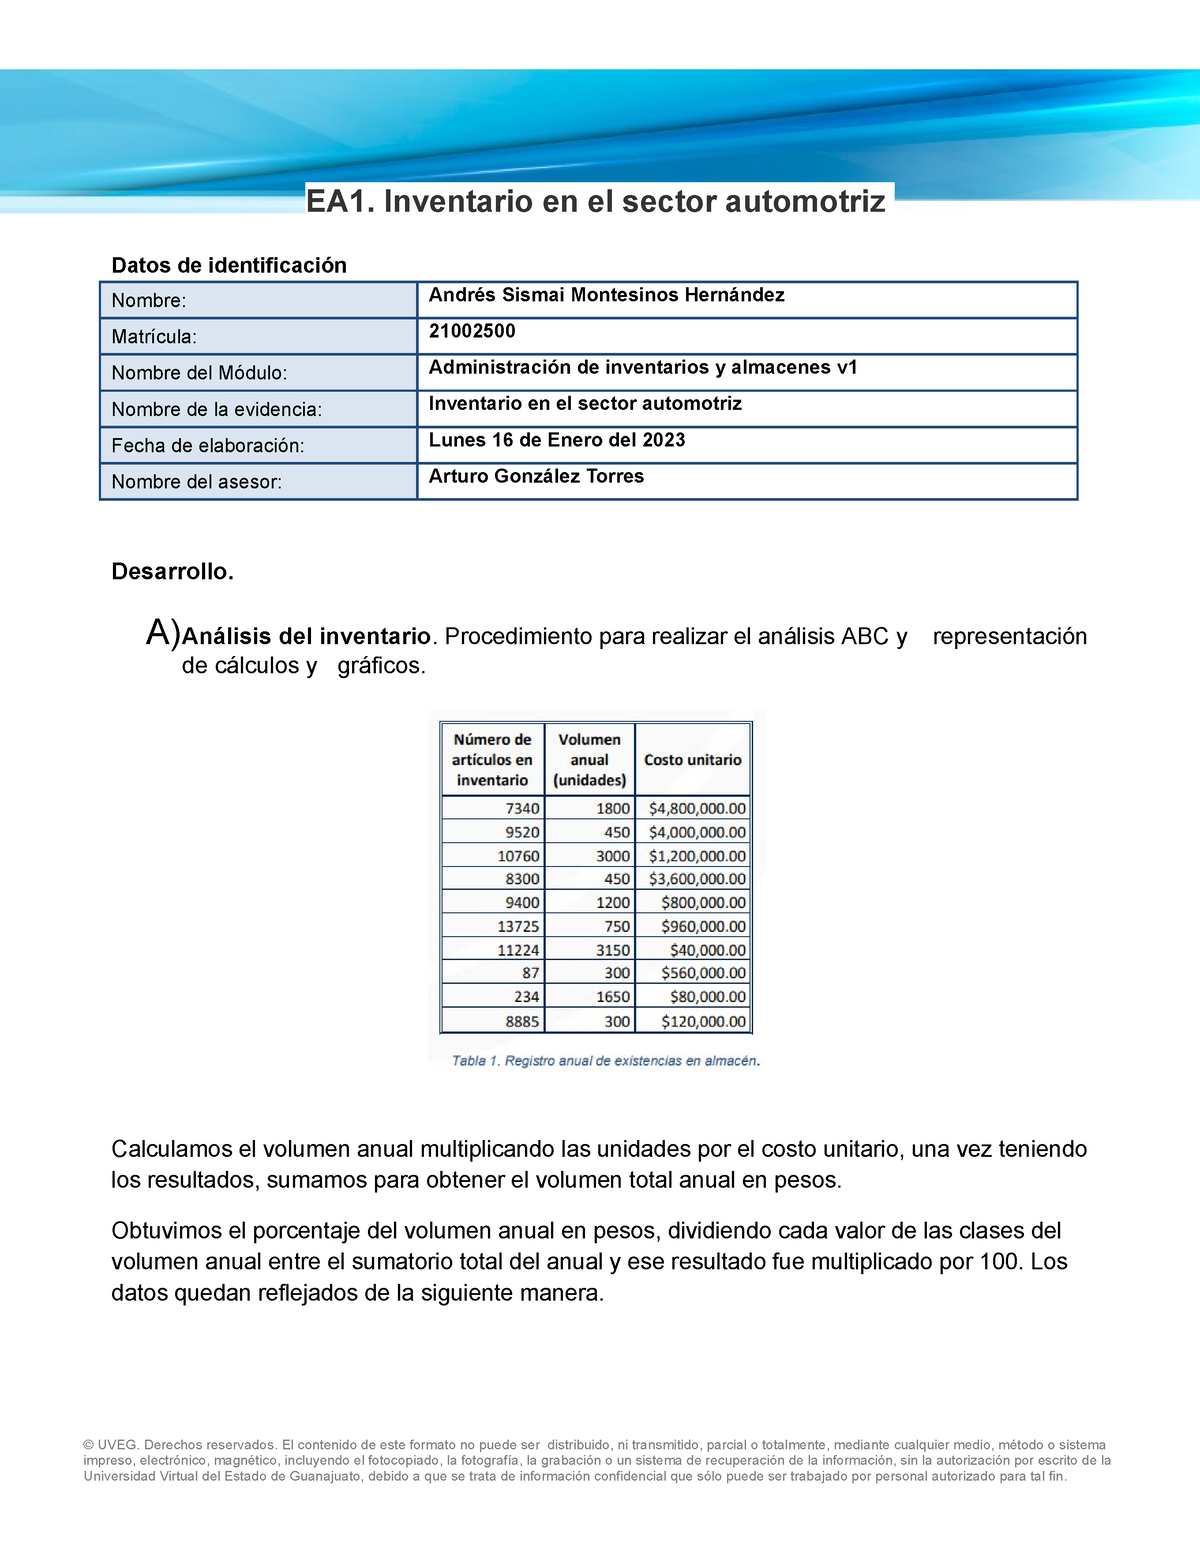 Montesinos Andrres Tipos Ea2 Ea1 Inventario En El Sector Automotriz Datos De Identificación 4116